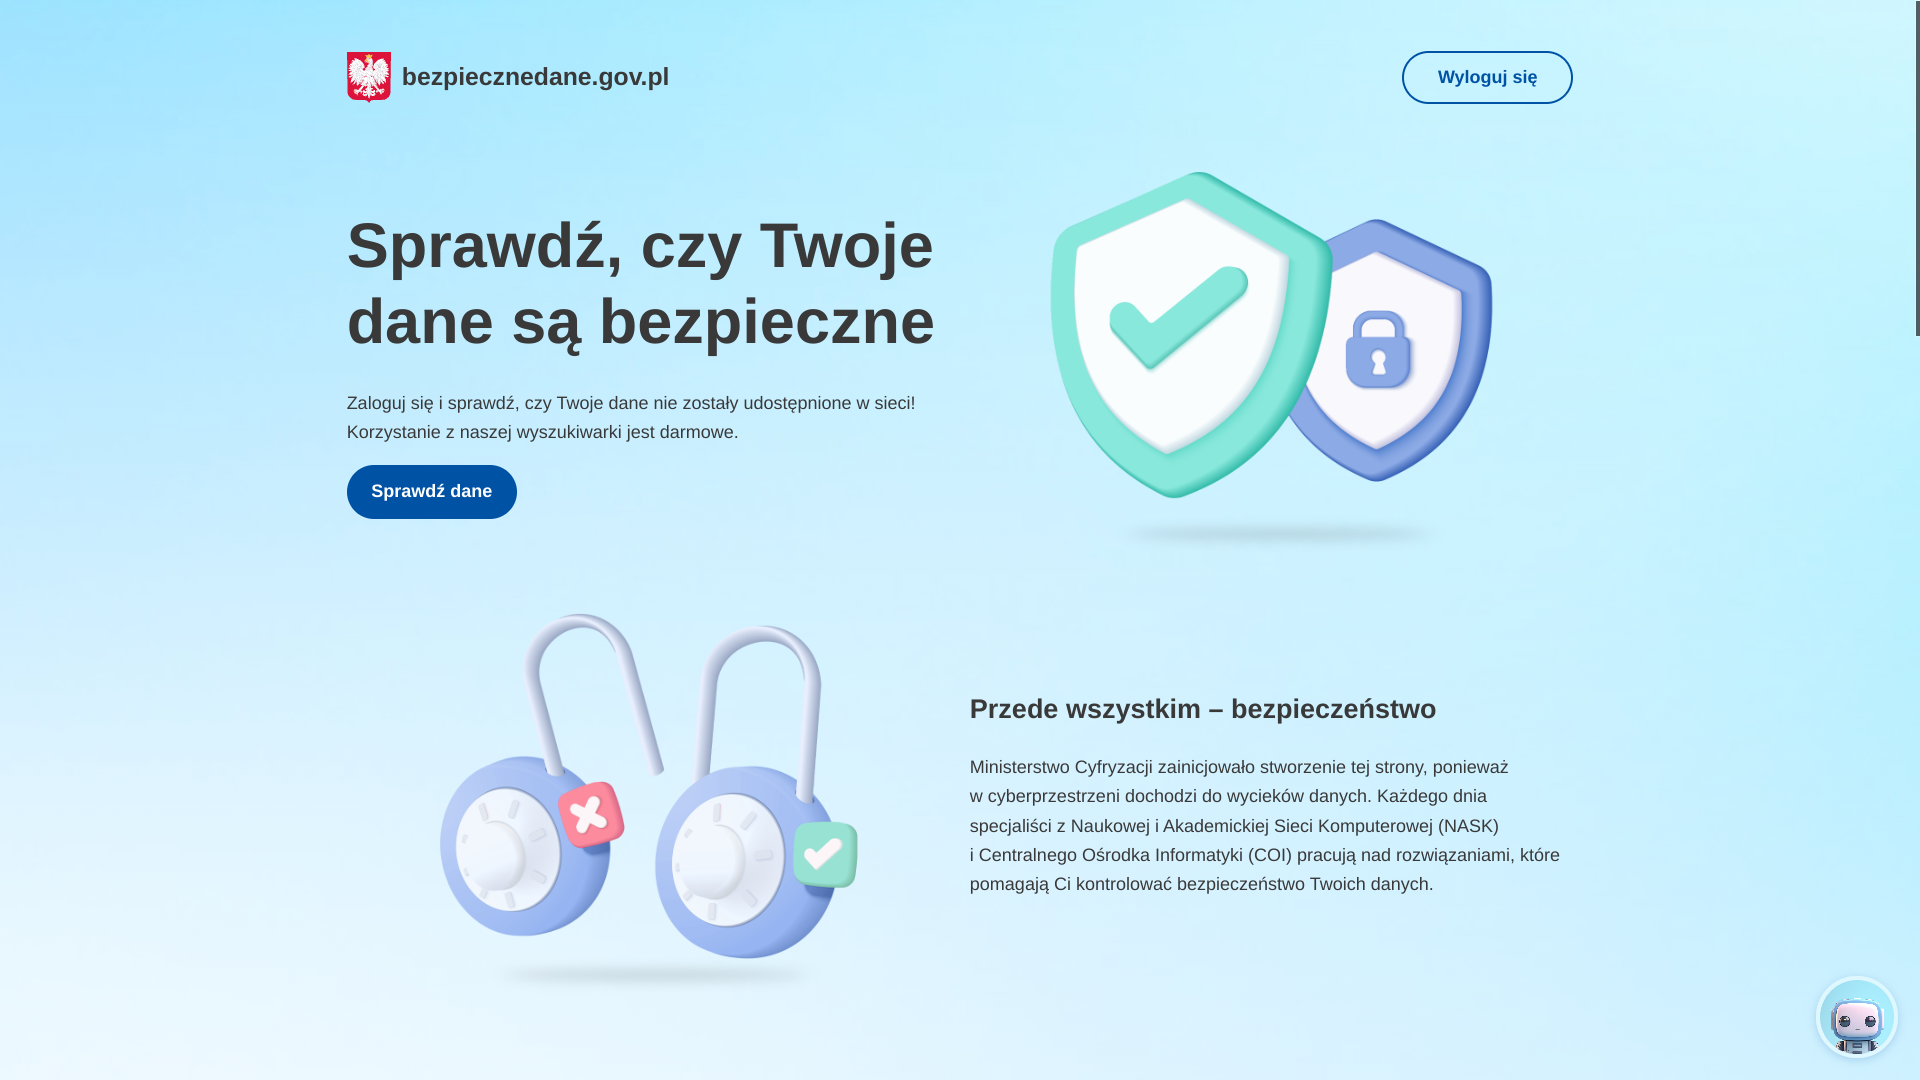 Wyciek danych z Alab strona serwisu bezpiecznedane.gov.pl